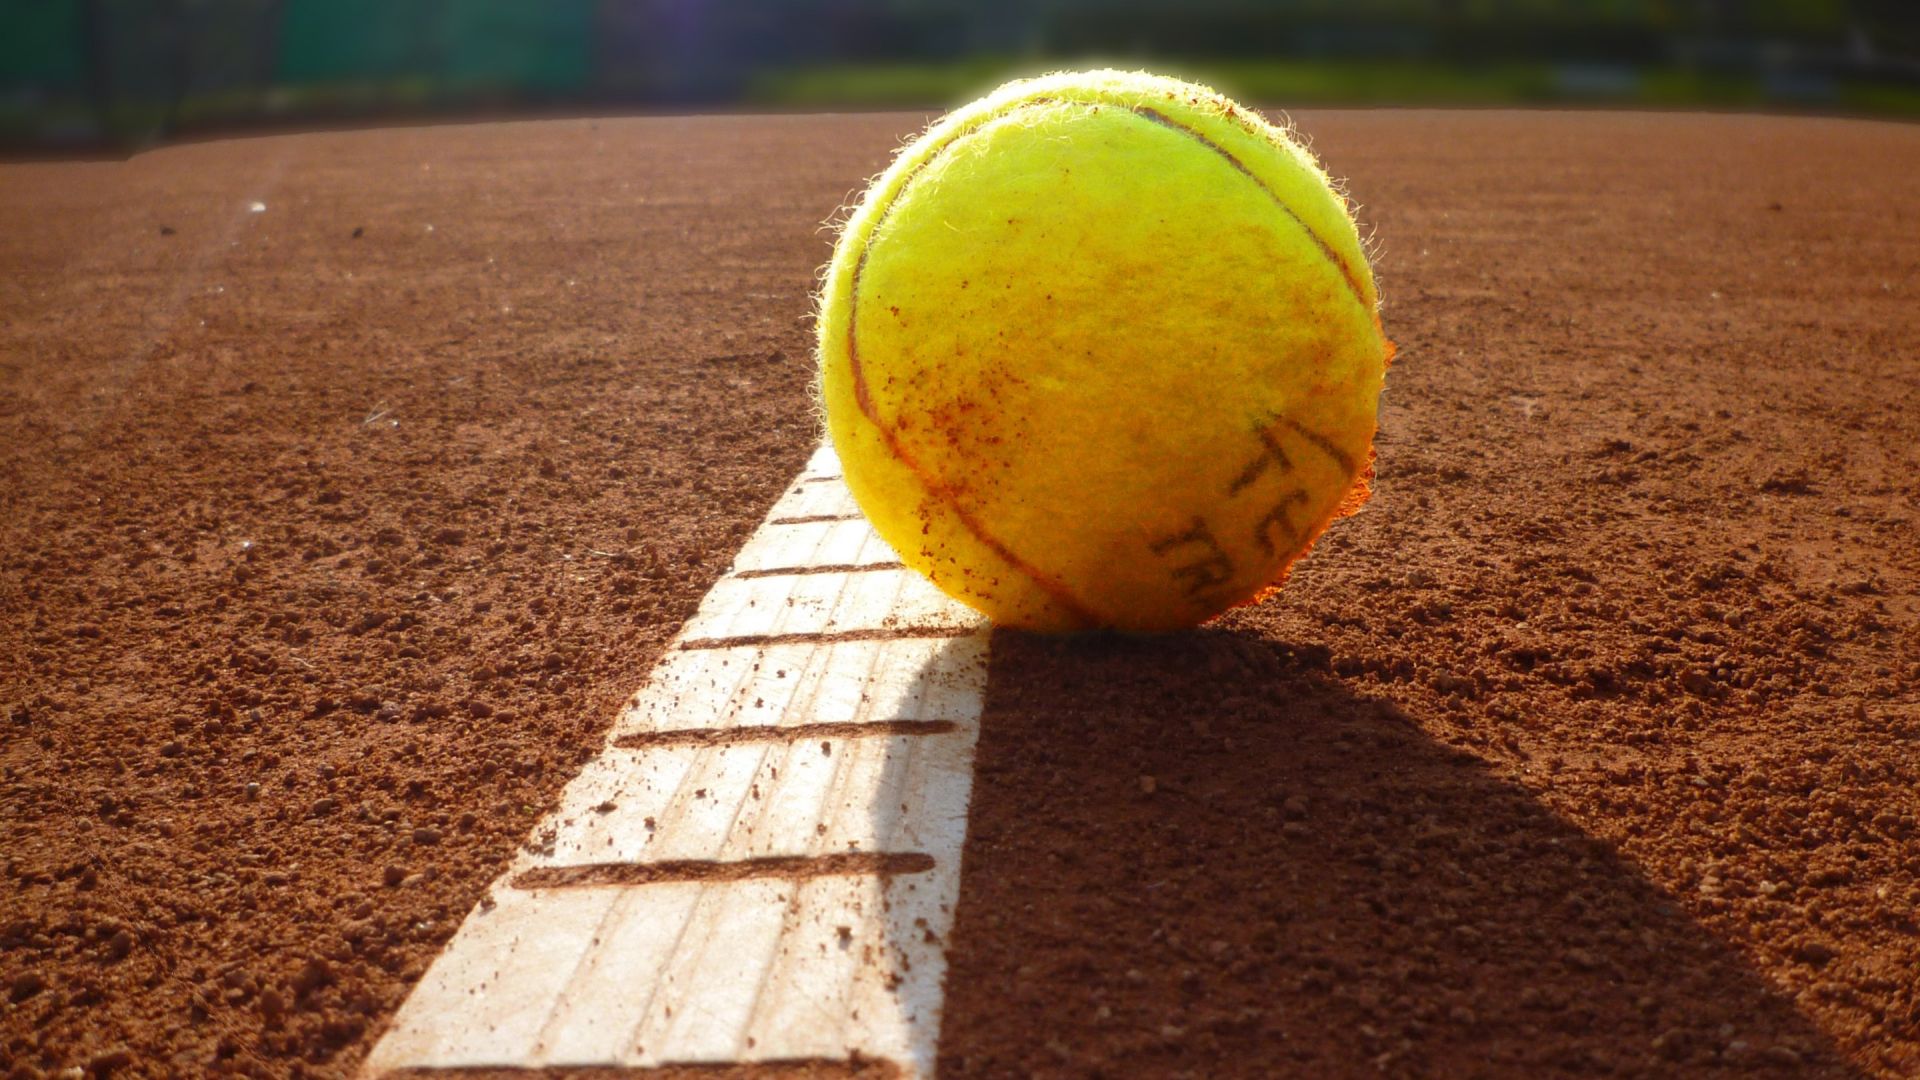 Wallpaper Tennis ball, sports, close up